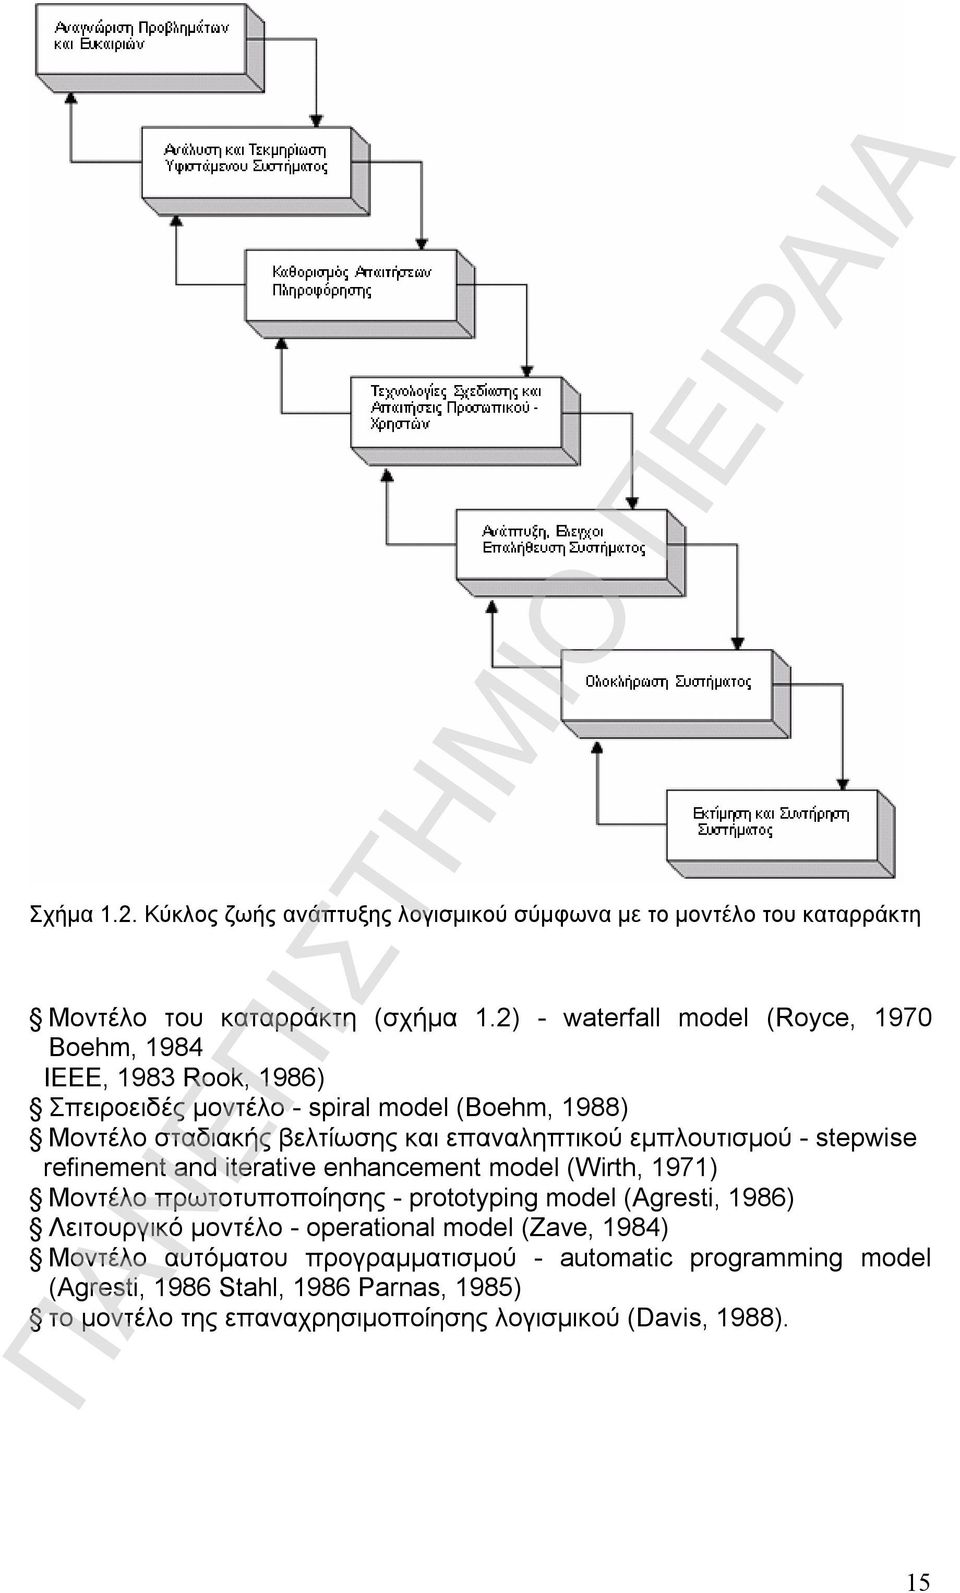 επαναληπτικού εµπλουτισµού - stepwise refinement and iterative enhancement model (Wirth, 1971) Μοντέλο πρωτοτυποποίησης - prototyping model (Agresti, 1986)